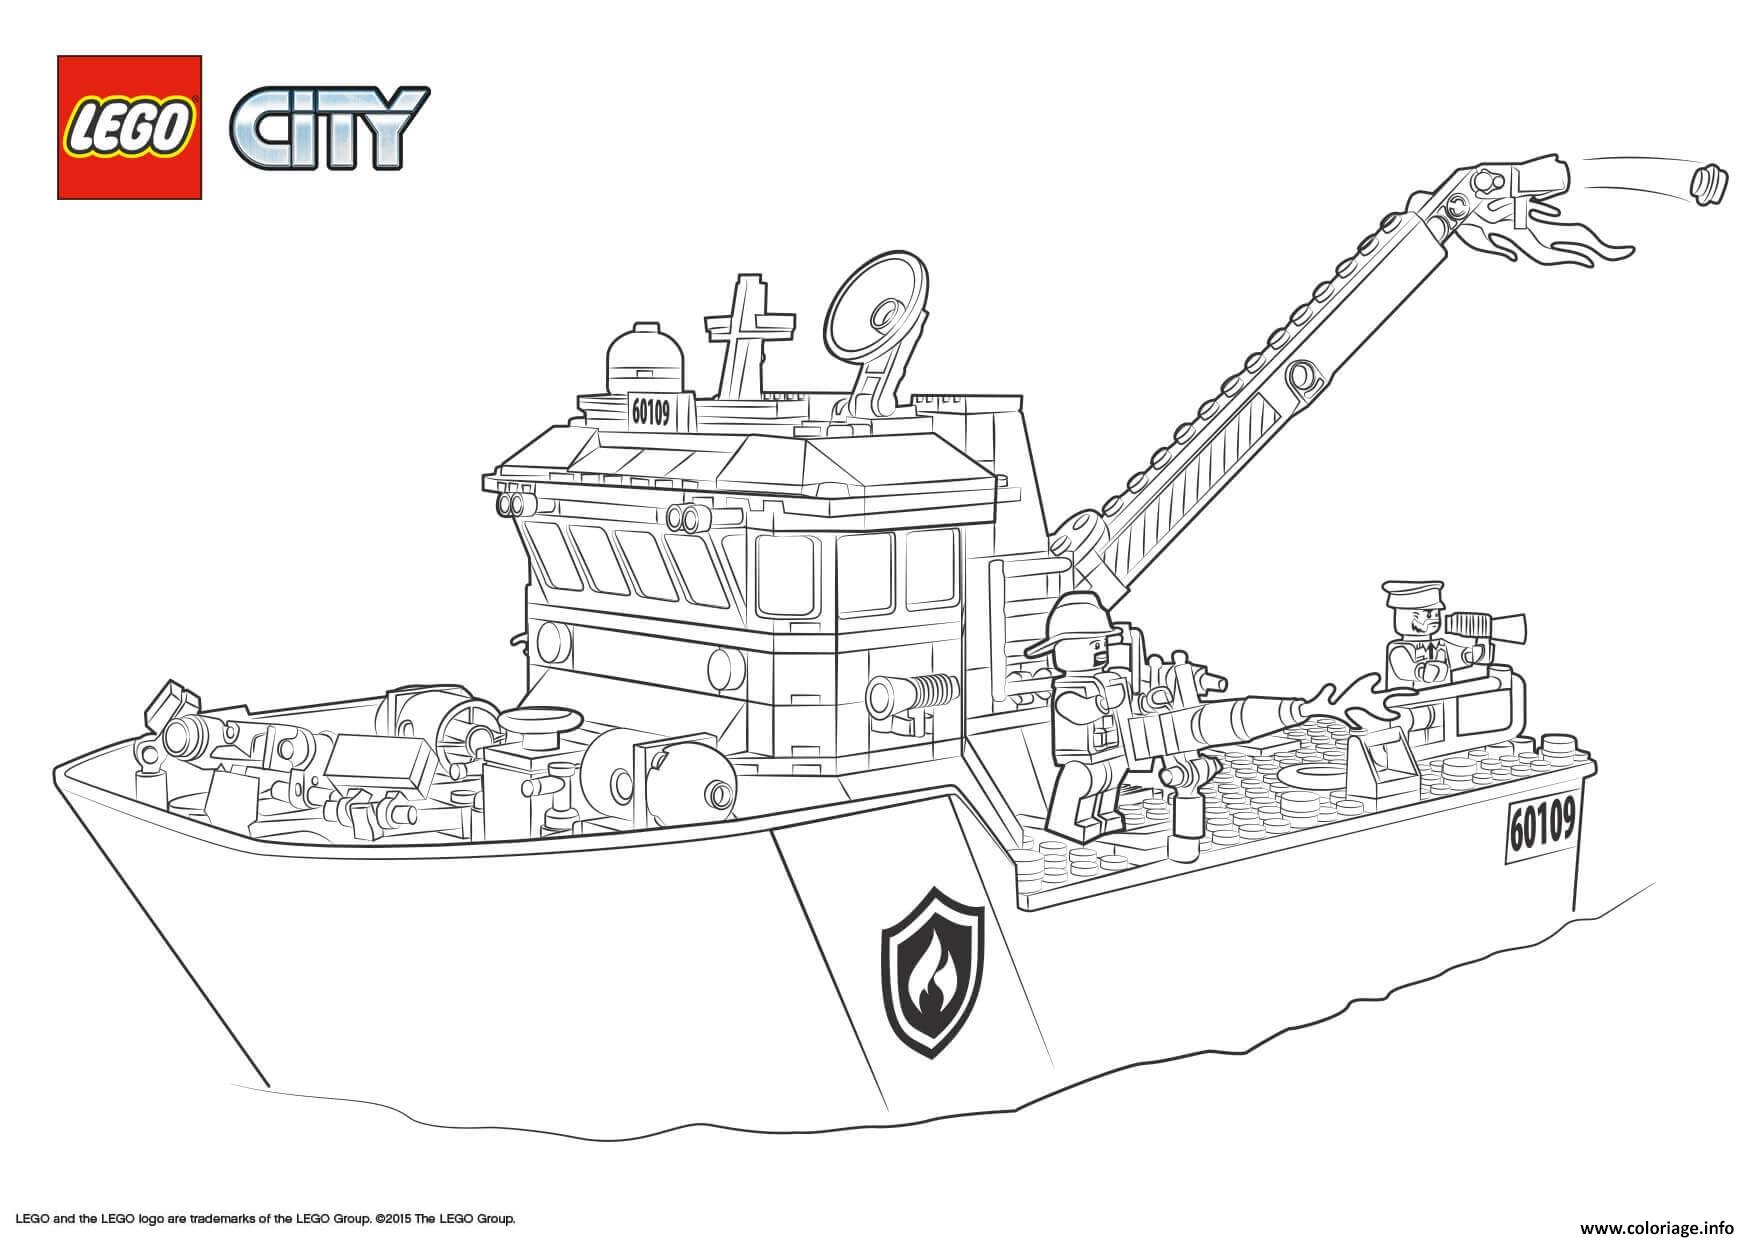 Dessin Lego City Fire Boat Coloriage Gratuit à Imprimer